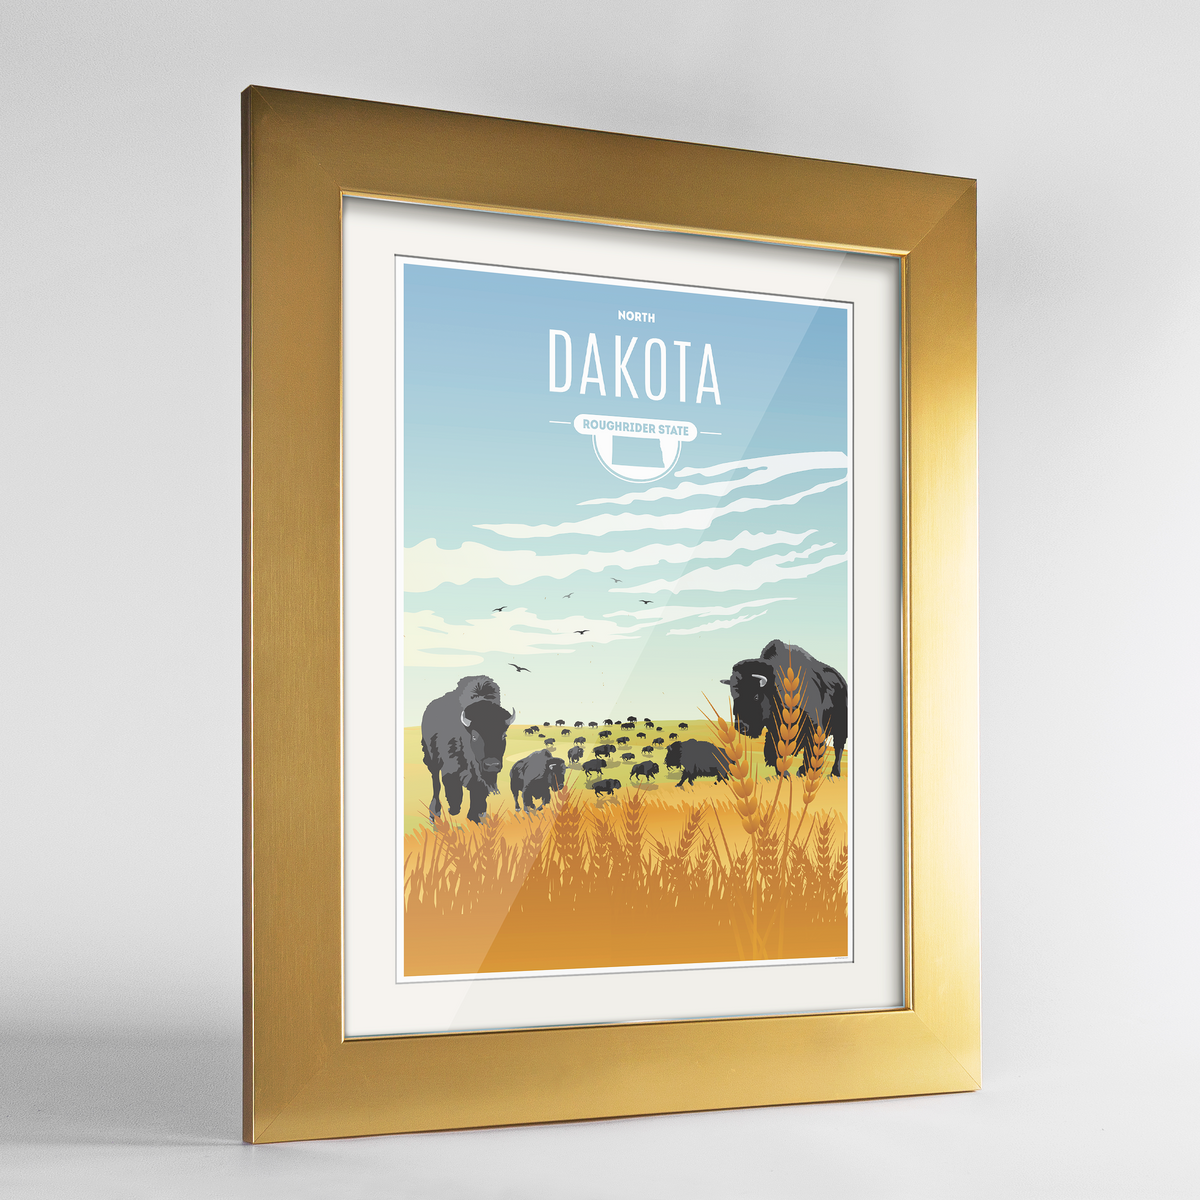 North Dakota State Frame Print